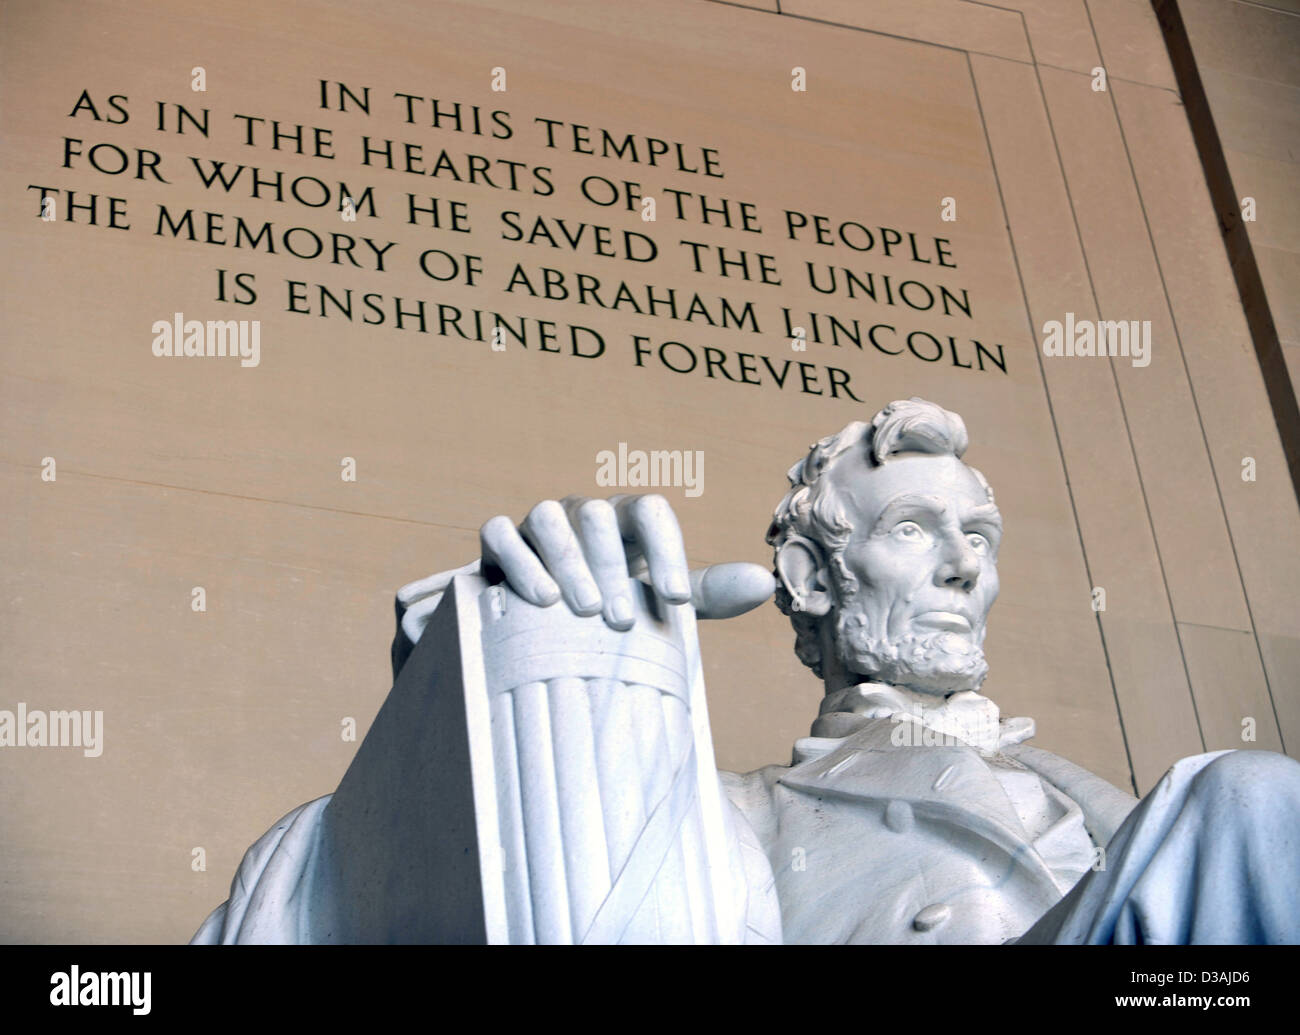 Abraham Lincoln 16e président des États-Unis d'Amérique, le Lincoln Memorial, le discours de Gettysburg, l'Union européenne la fin de l'esclavage, USA Banque D'Images